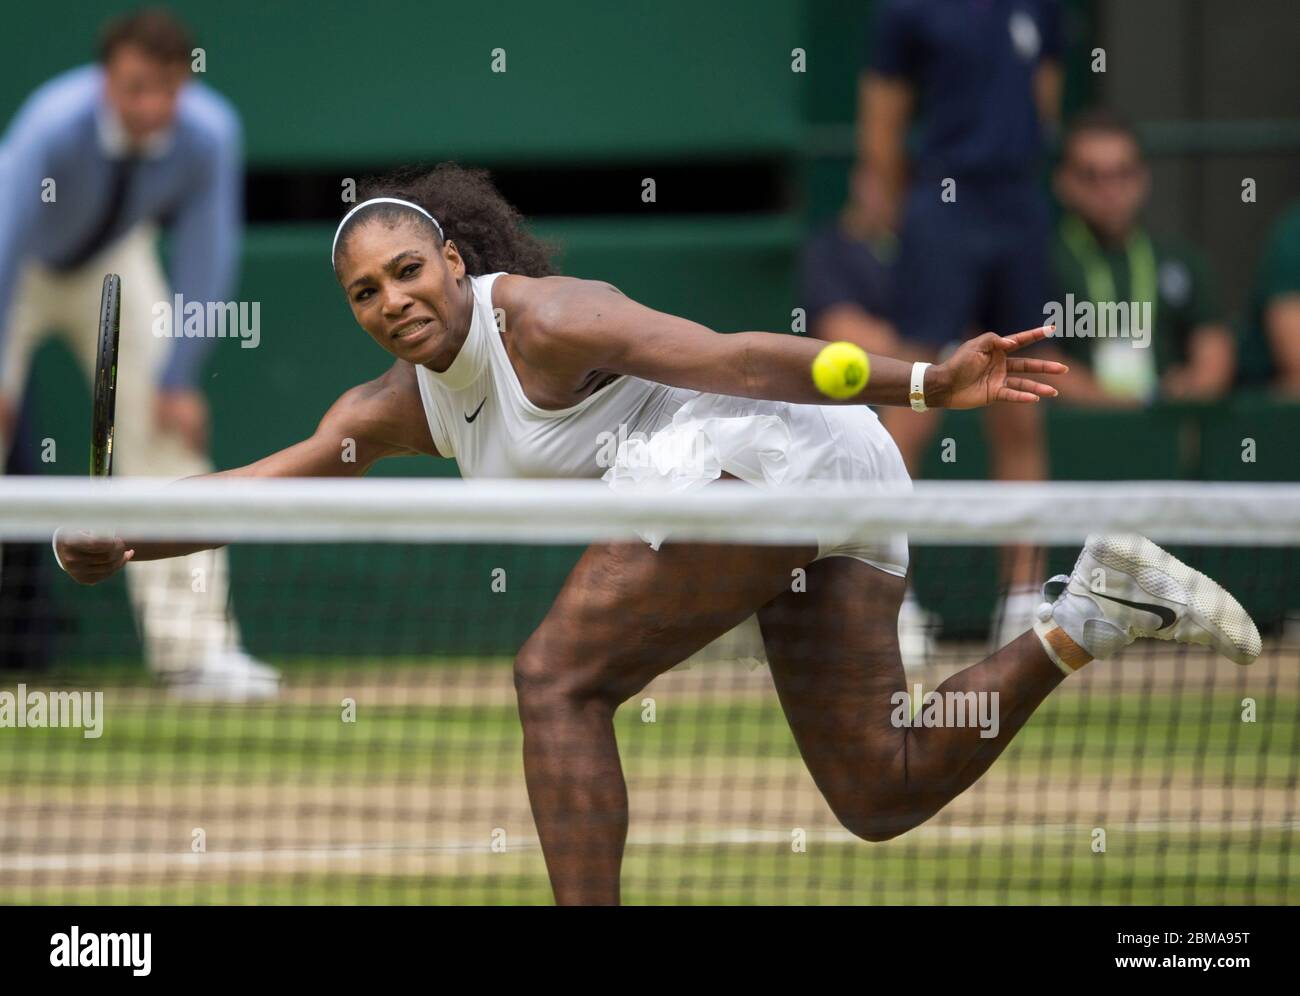 9 juillet 2016, Centre court, Wimbledon, Londres: Serena Williams (USA) en action contre Angelique Curber, (GER) lors de la finale des femmes célibataires. Banque D'Images